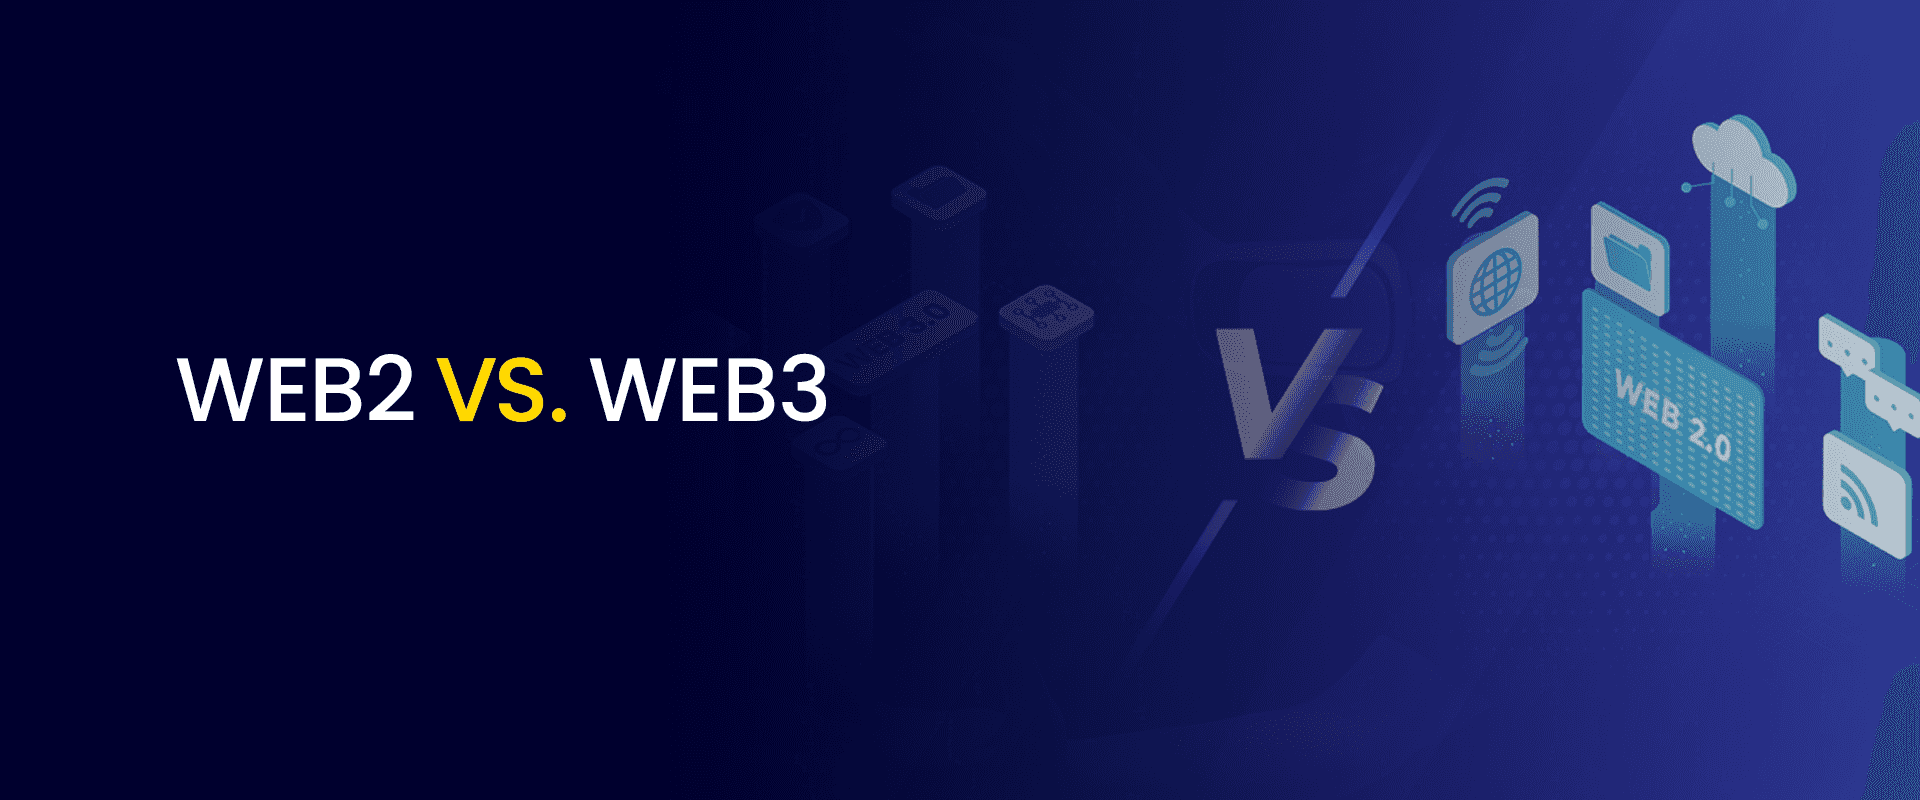 Web2 VS Web3